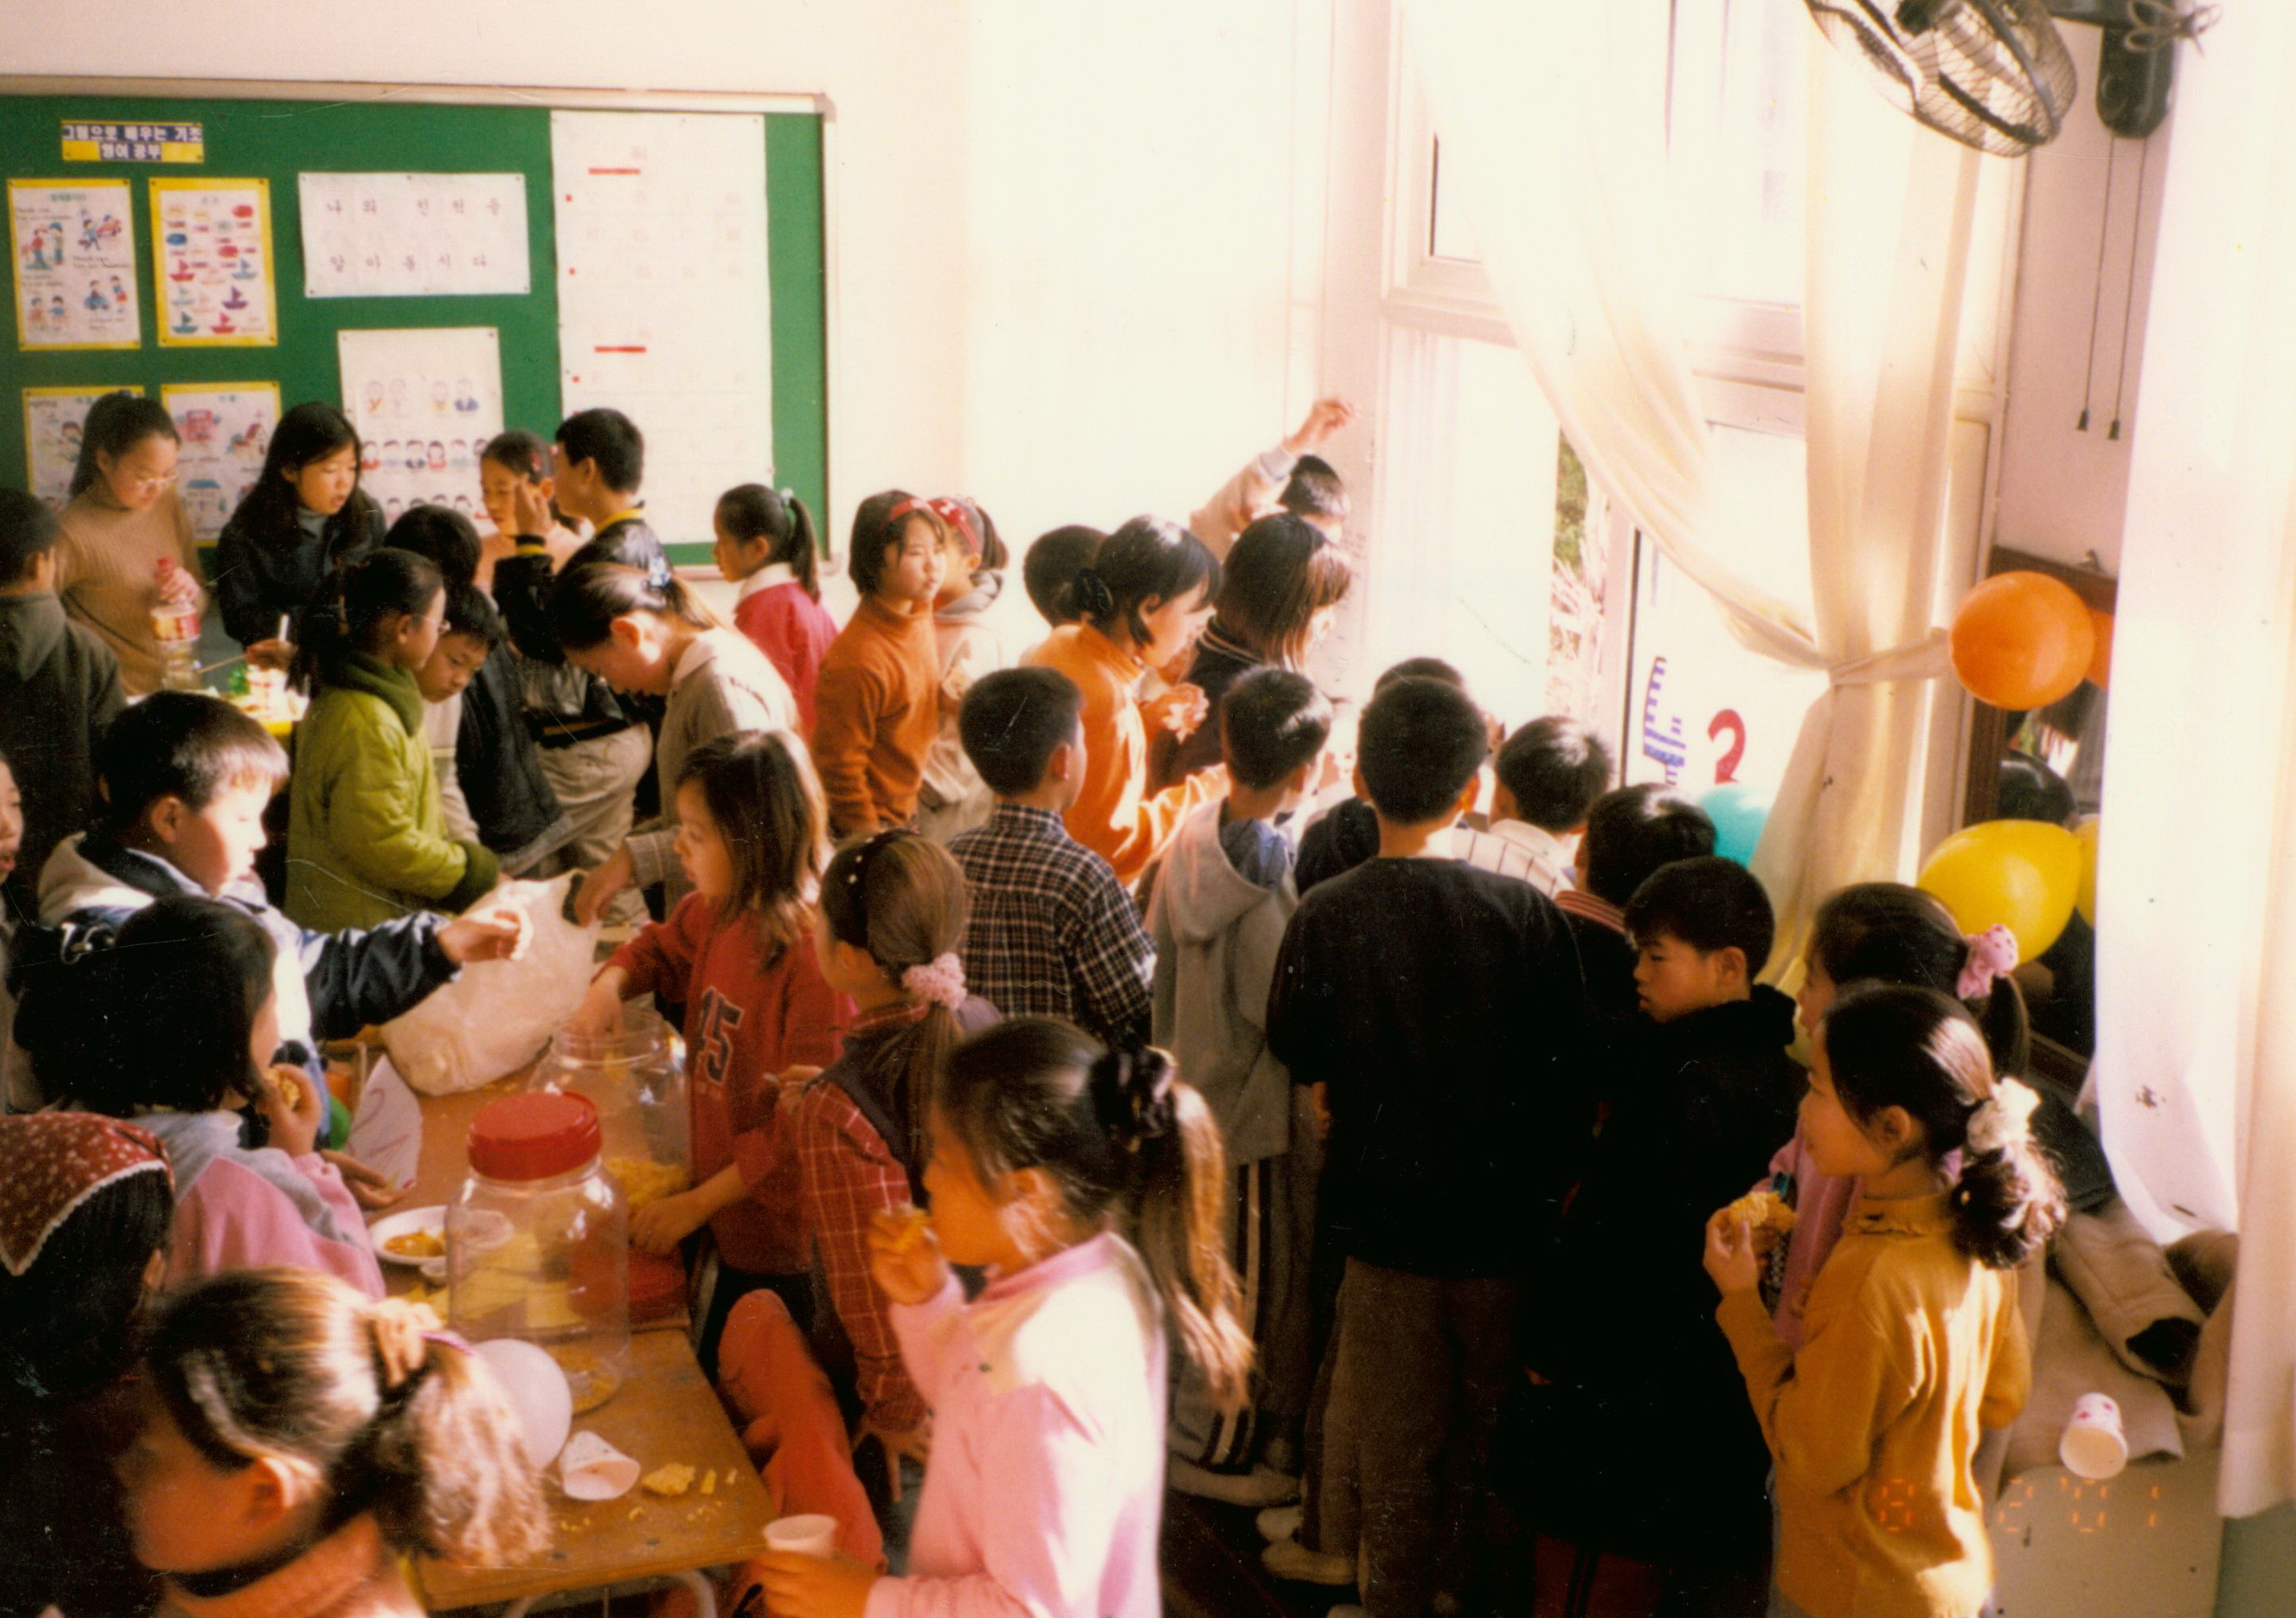 
															
															
																
																	북면초등학교 알뜰 바자회 - 2001년 [1번째 이미지]
																
																
															
														